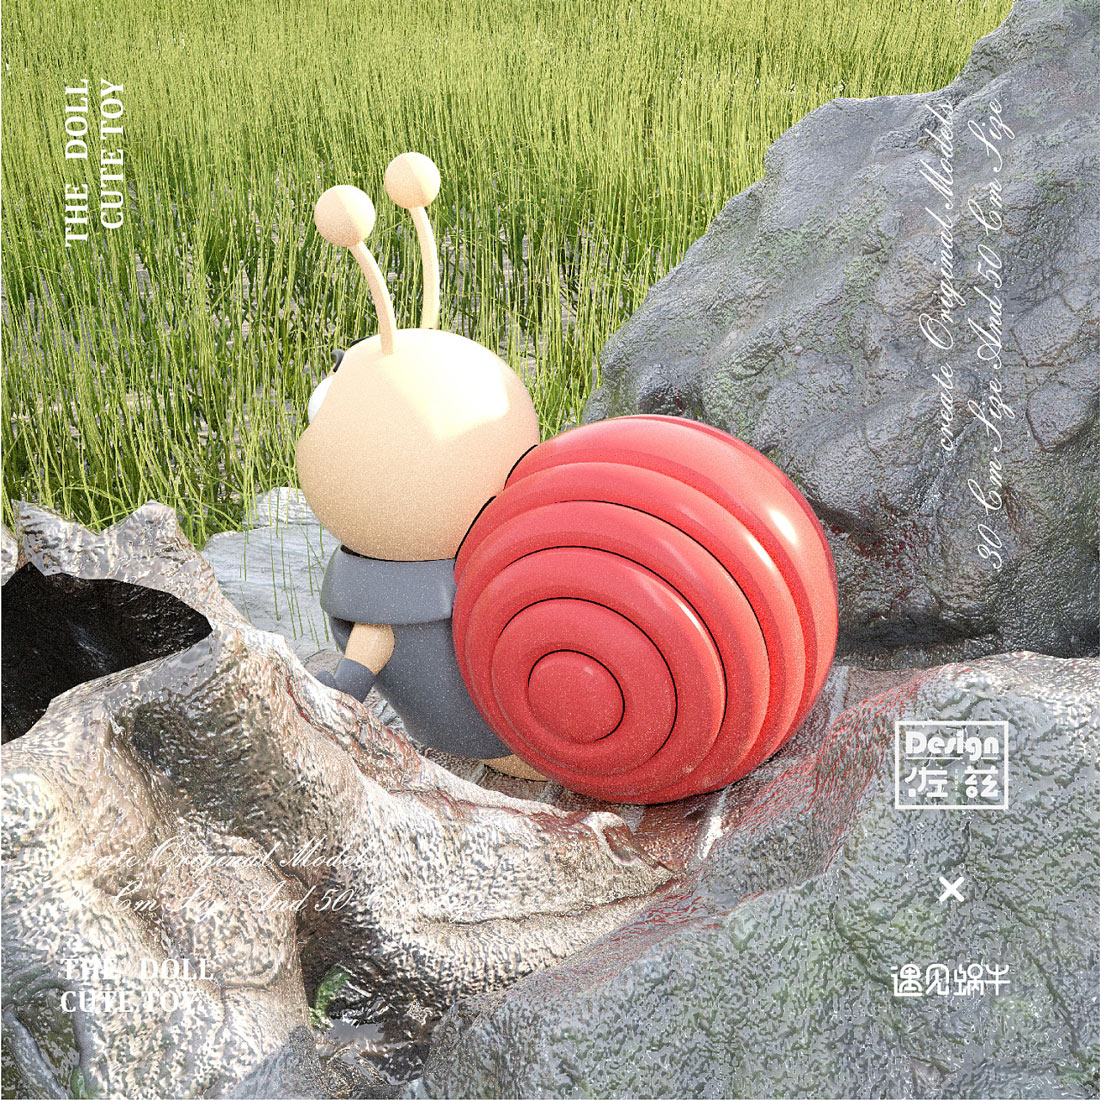 盲盒·佐兹×《遇见蜗牛》手办，玩具IP，手工艺品平面设计